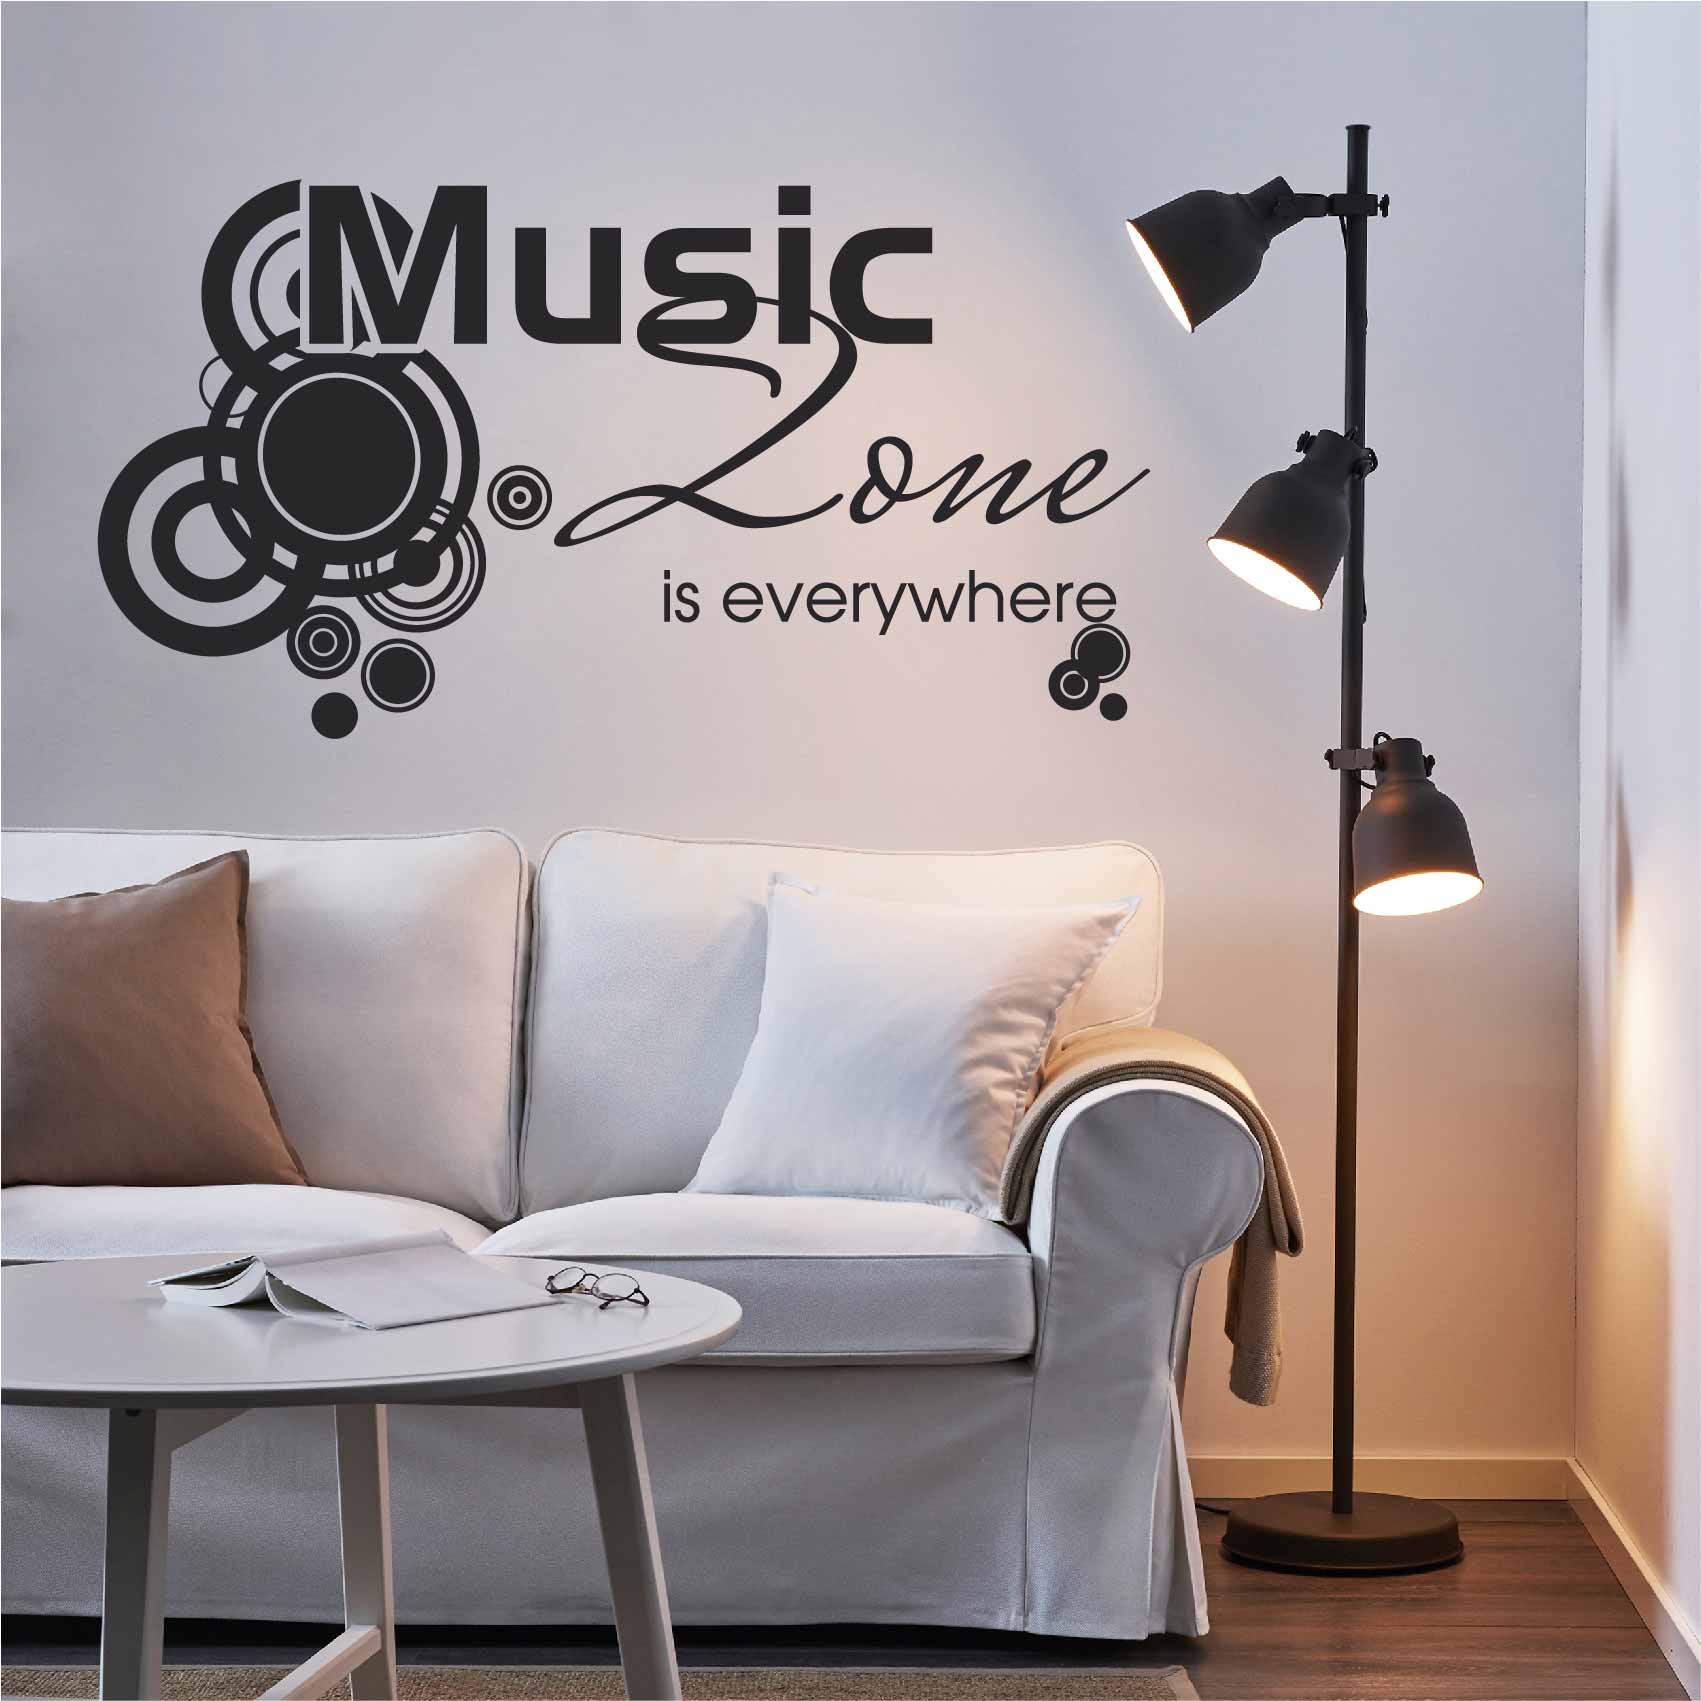 stickers-mural-musique-ref27musique-autocollant-muraux-musique-sticker-mural-musical-note-notes-deco-salon-chambre-adulte-ado-enfant